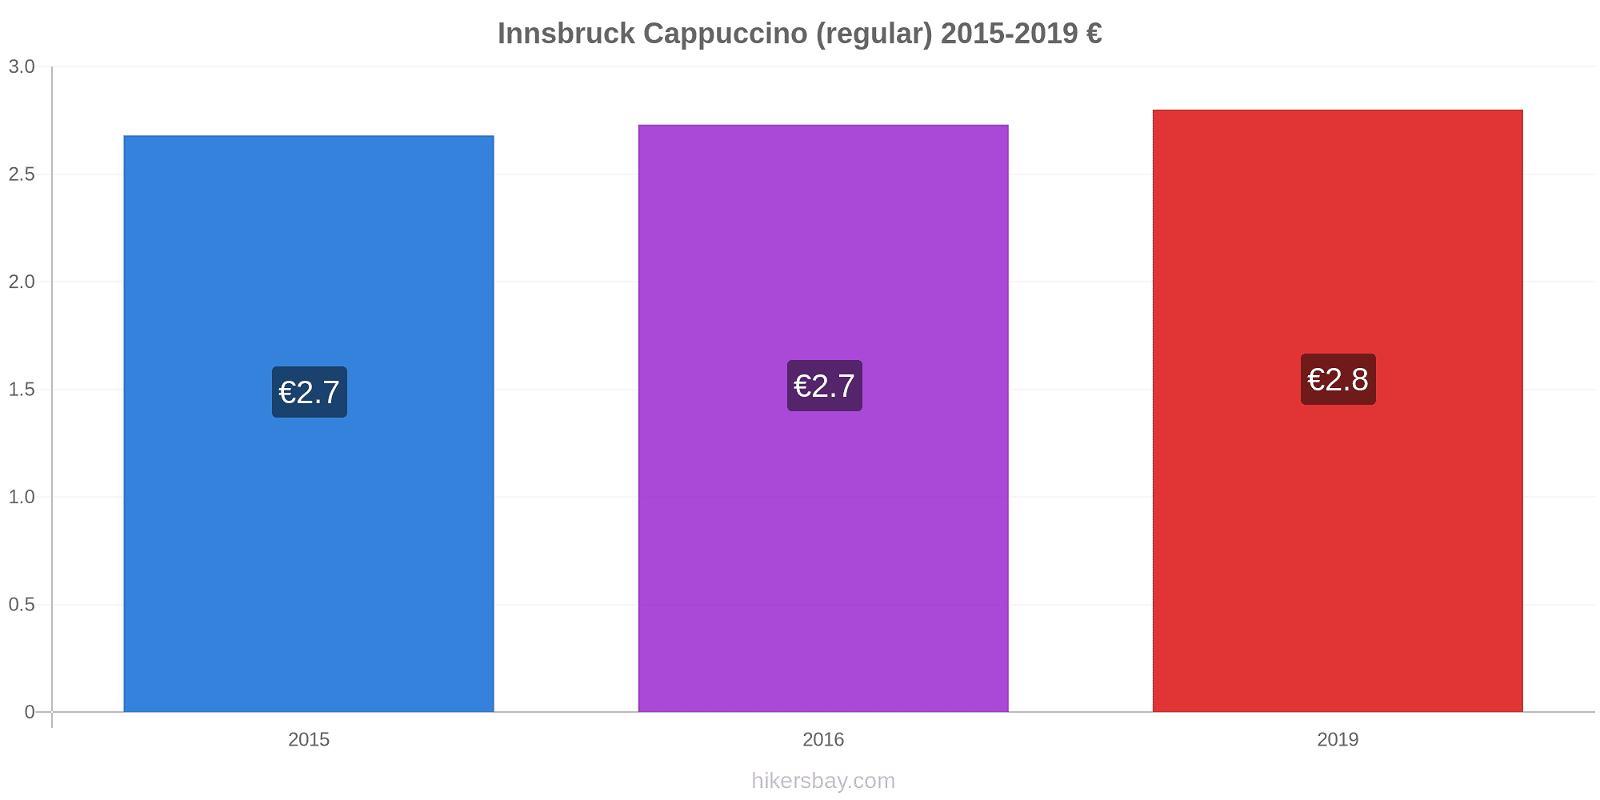 Innsbruck price changes Cappuccino (regular) hikersbay.com